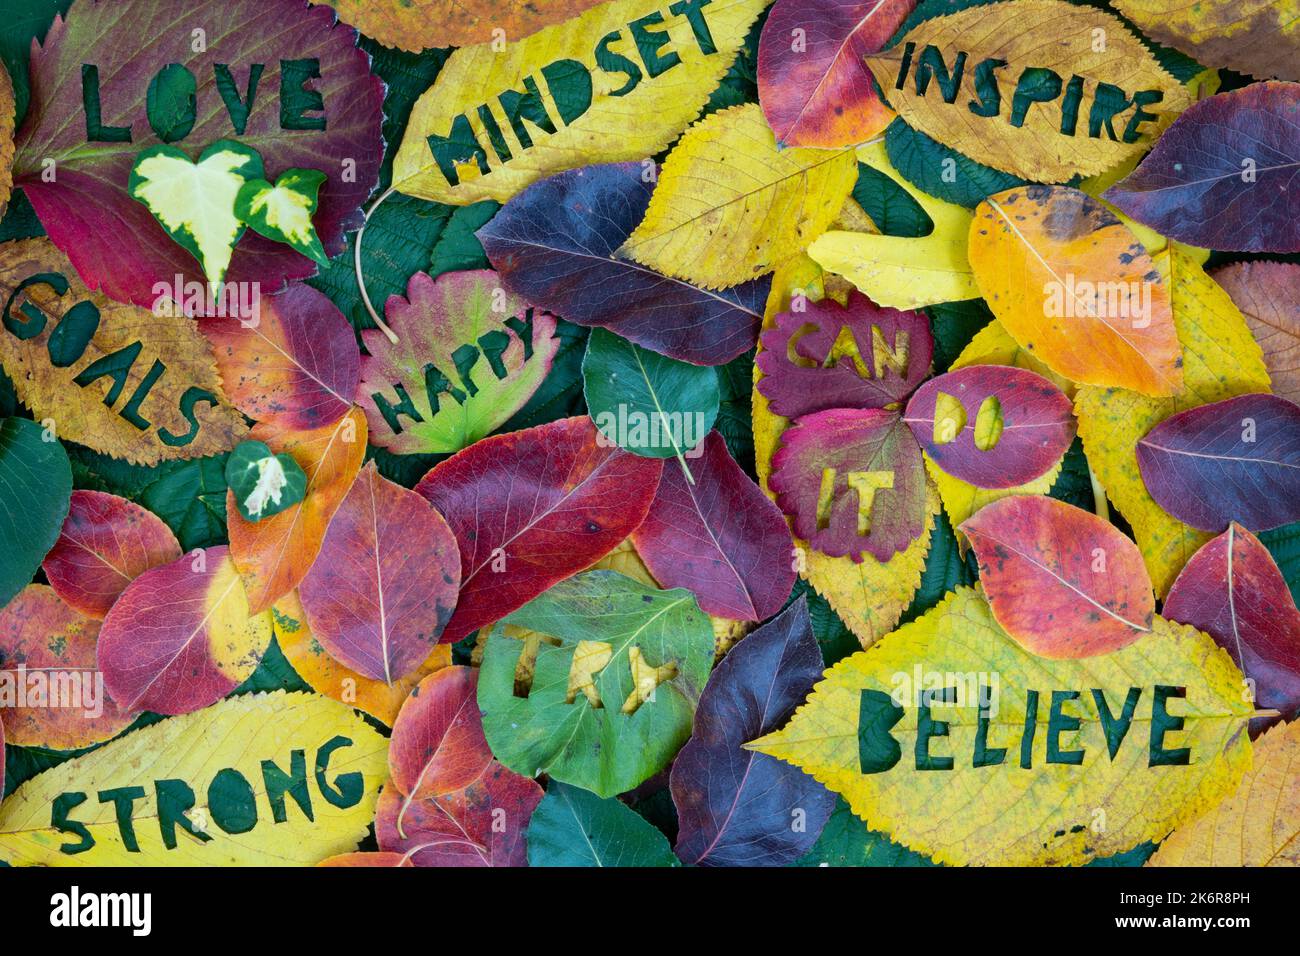 Kreatives buntes Herbstkonzept für Selbstmotivation und positive Einstellung mit in Blätter gemeißelten Worten. Flach liegend. Stockfoto